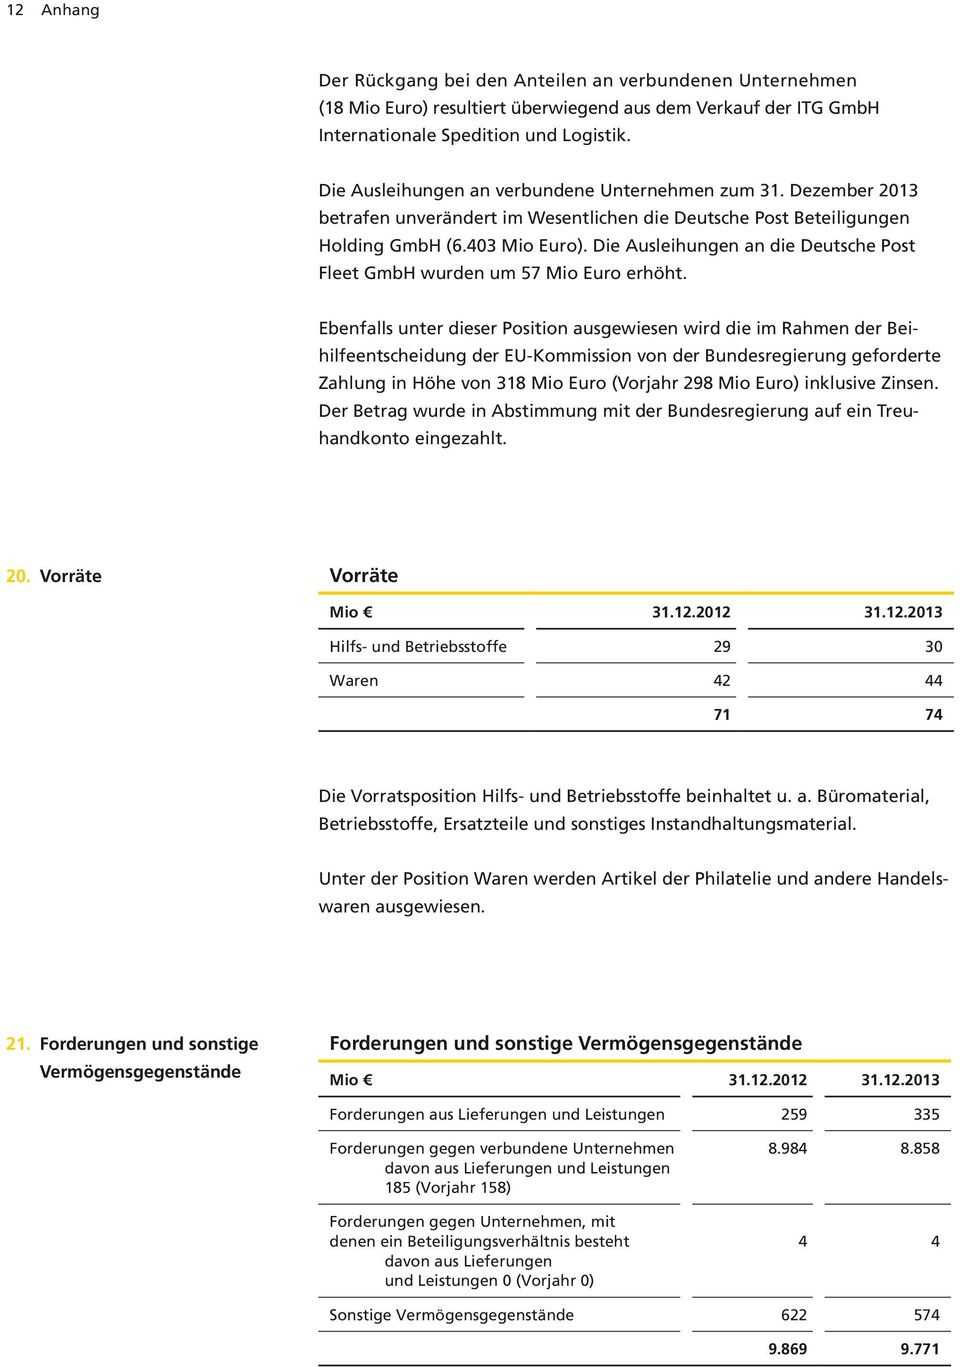 Die Ausleihungen an die Deutsche Post Fleet GmbH wurden um 57 Mio Euro erhöht.